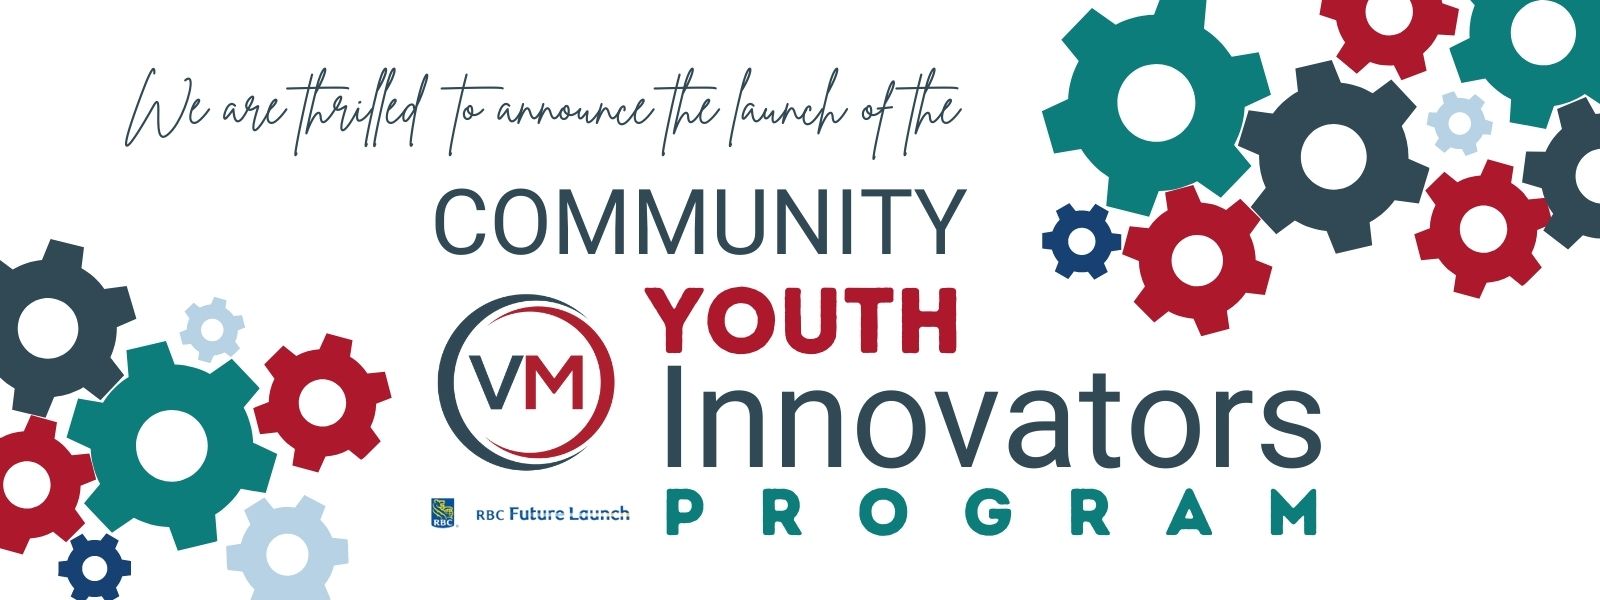 VM Community Youth Innovators